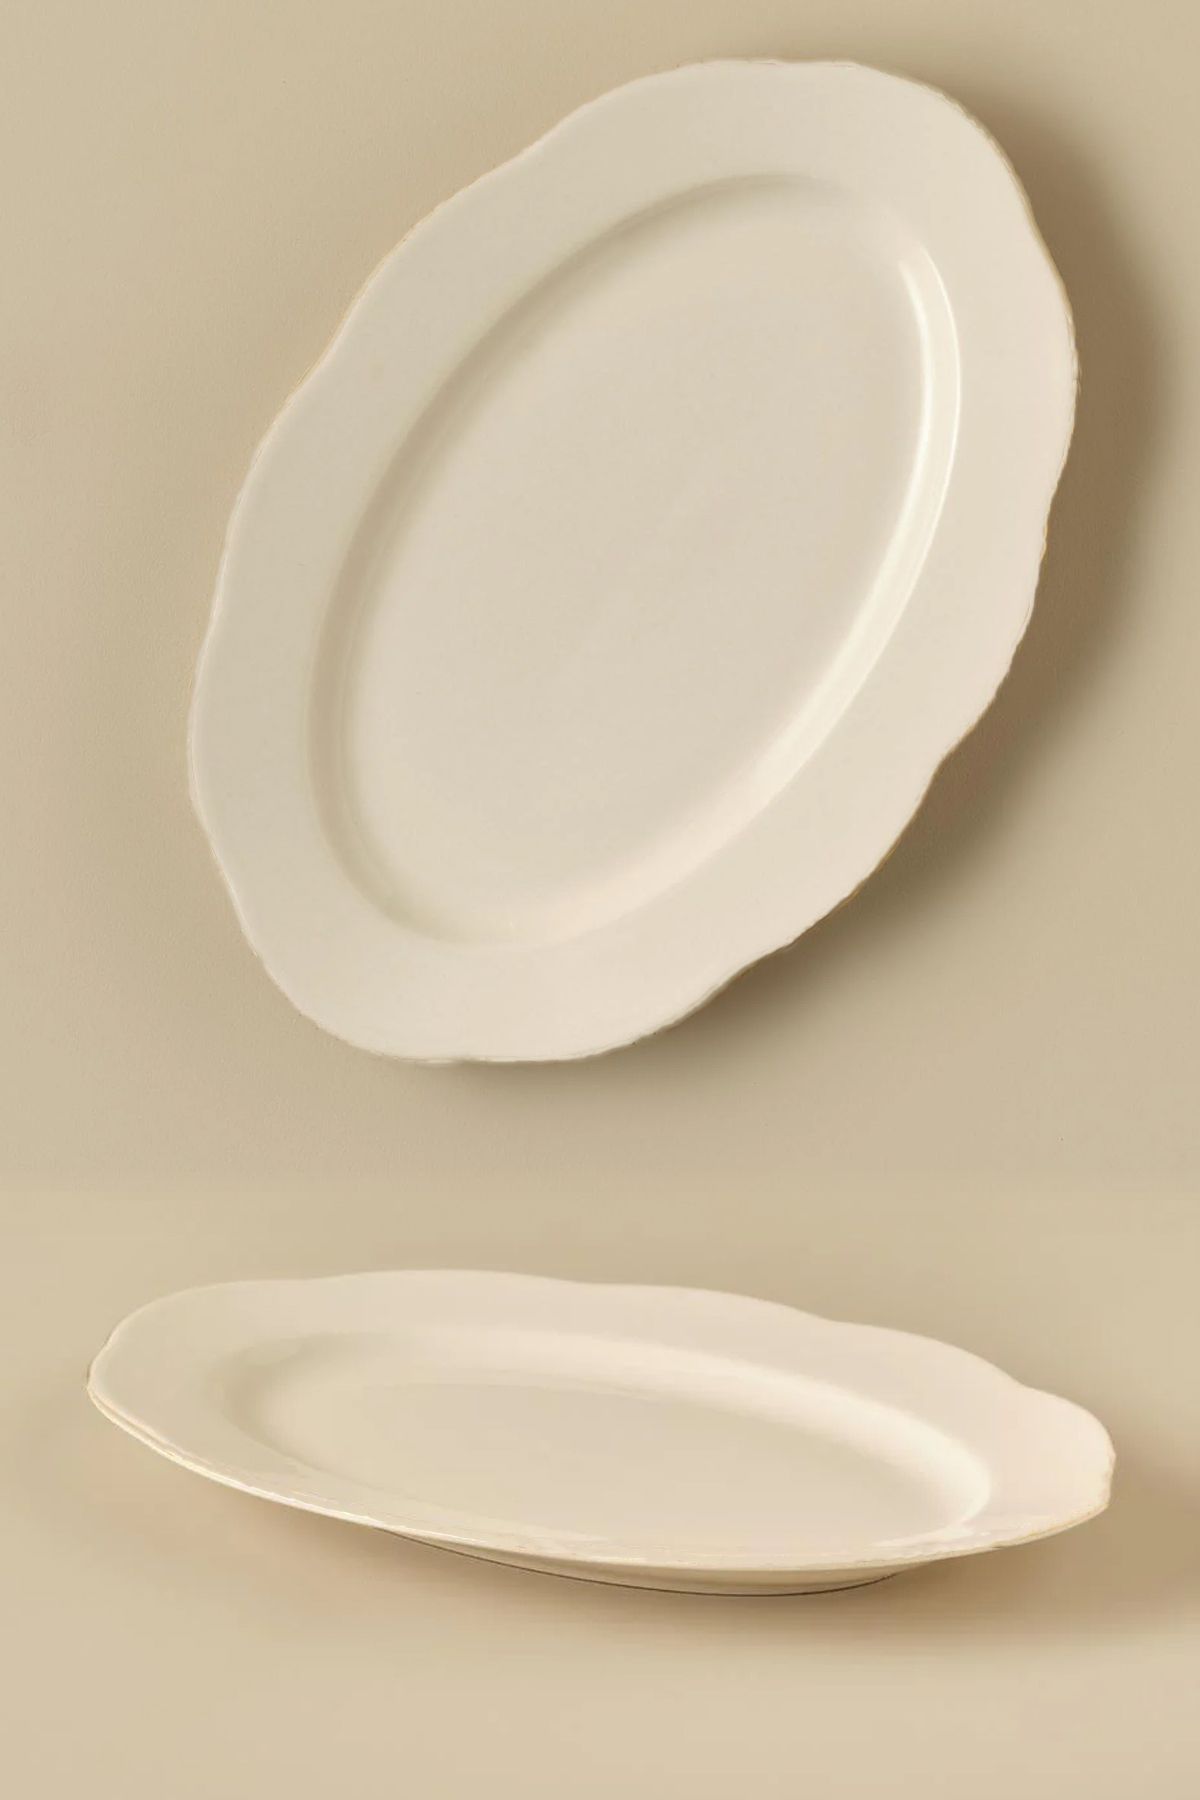 MAY HOME Clover Porselen Kayık Tabak 30 Cm & Meze Salata Tabağı  1 ADET